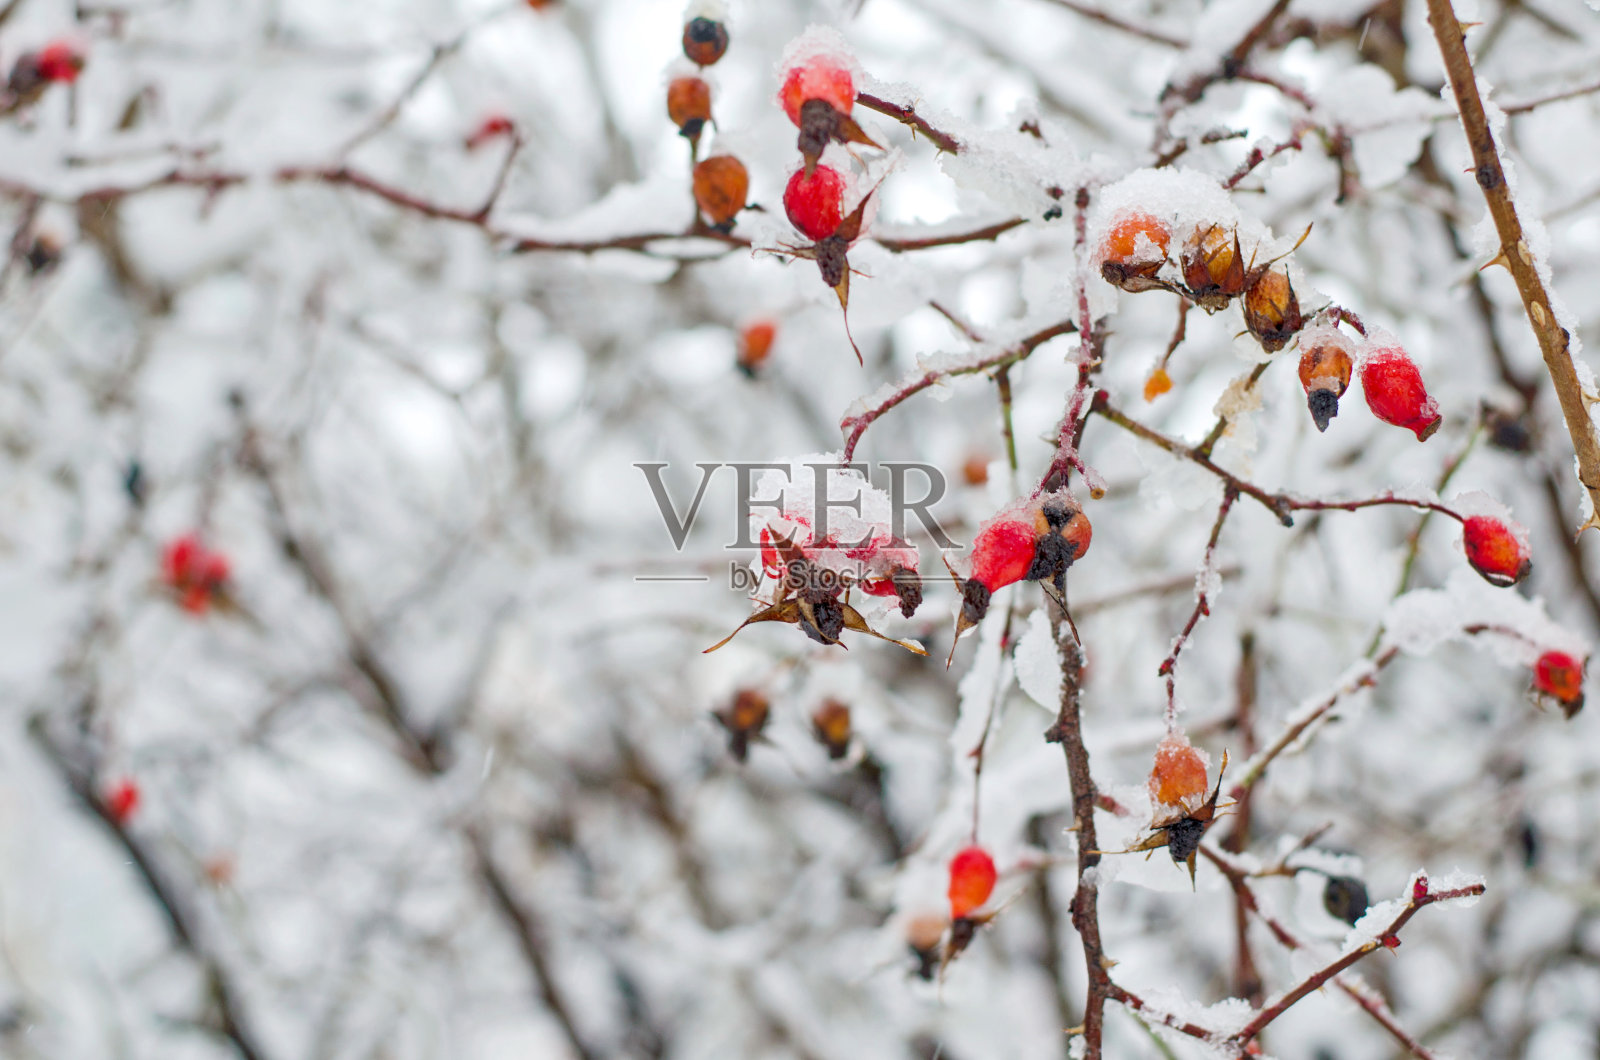 雪下的野玫瑰浆果照片摄影图片